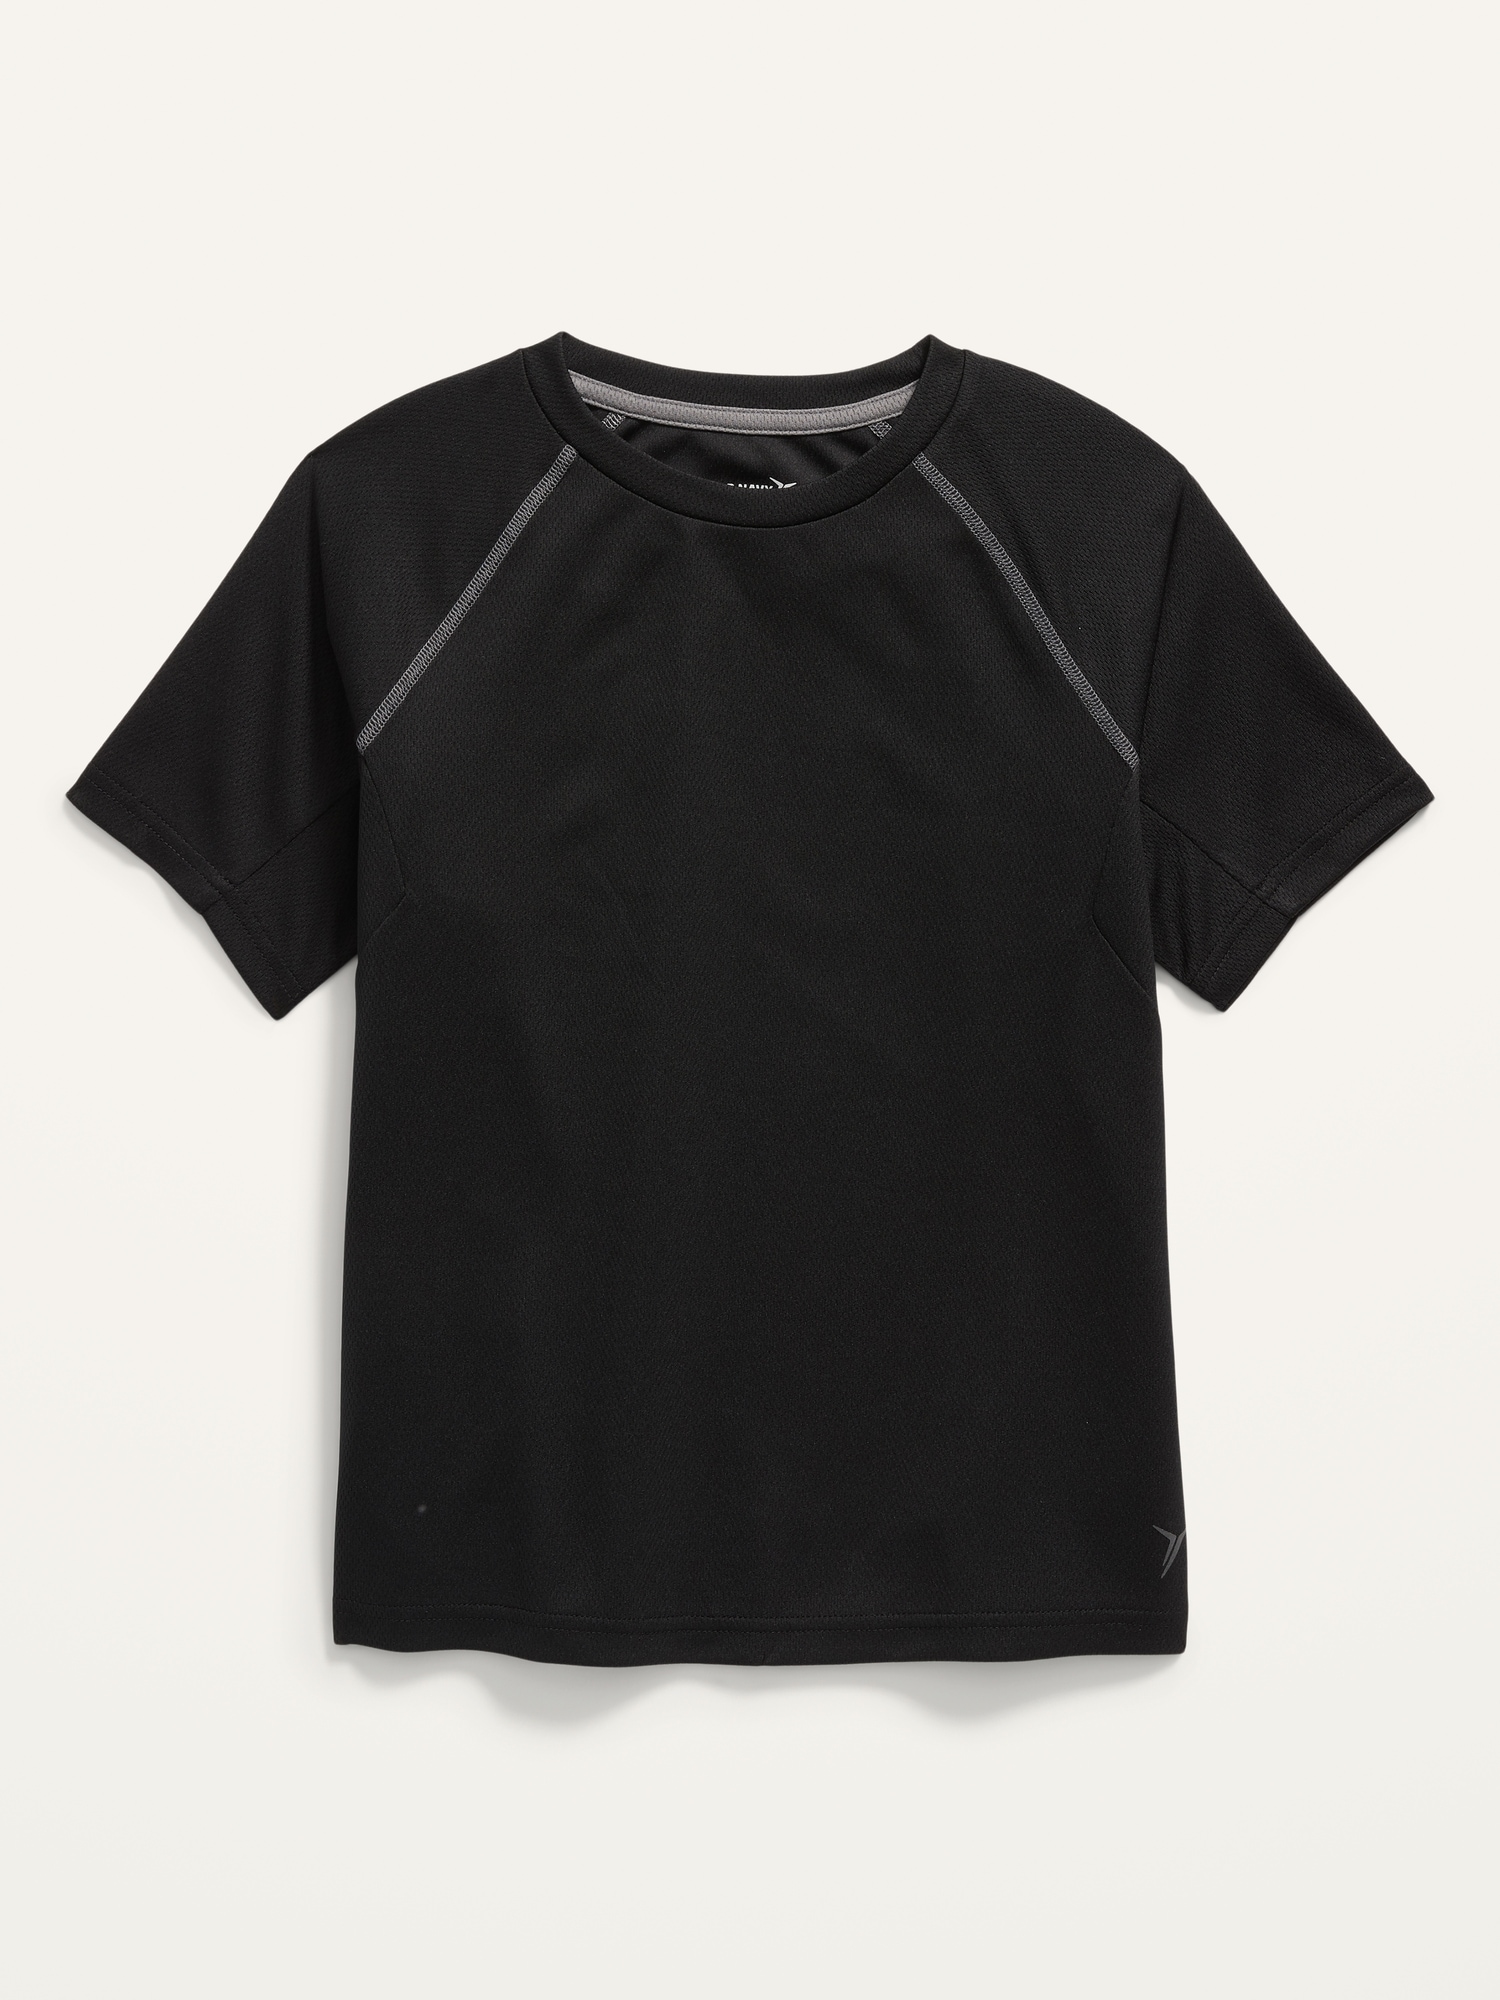 Go-Dry Short-Sleeve Mesh T-Shirt For Boys Hot Deal